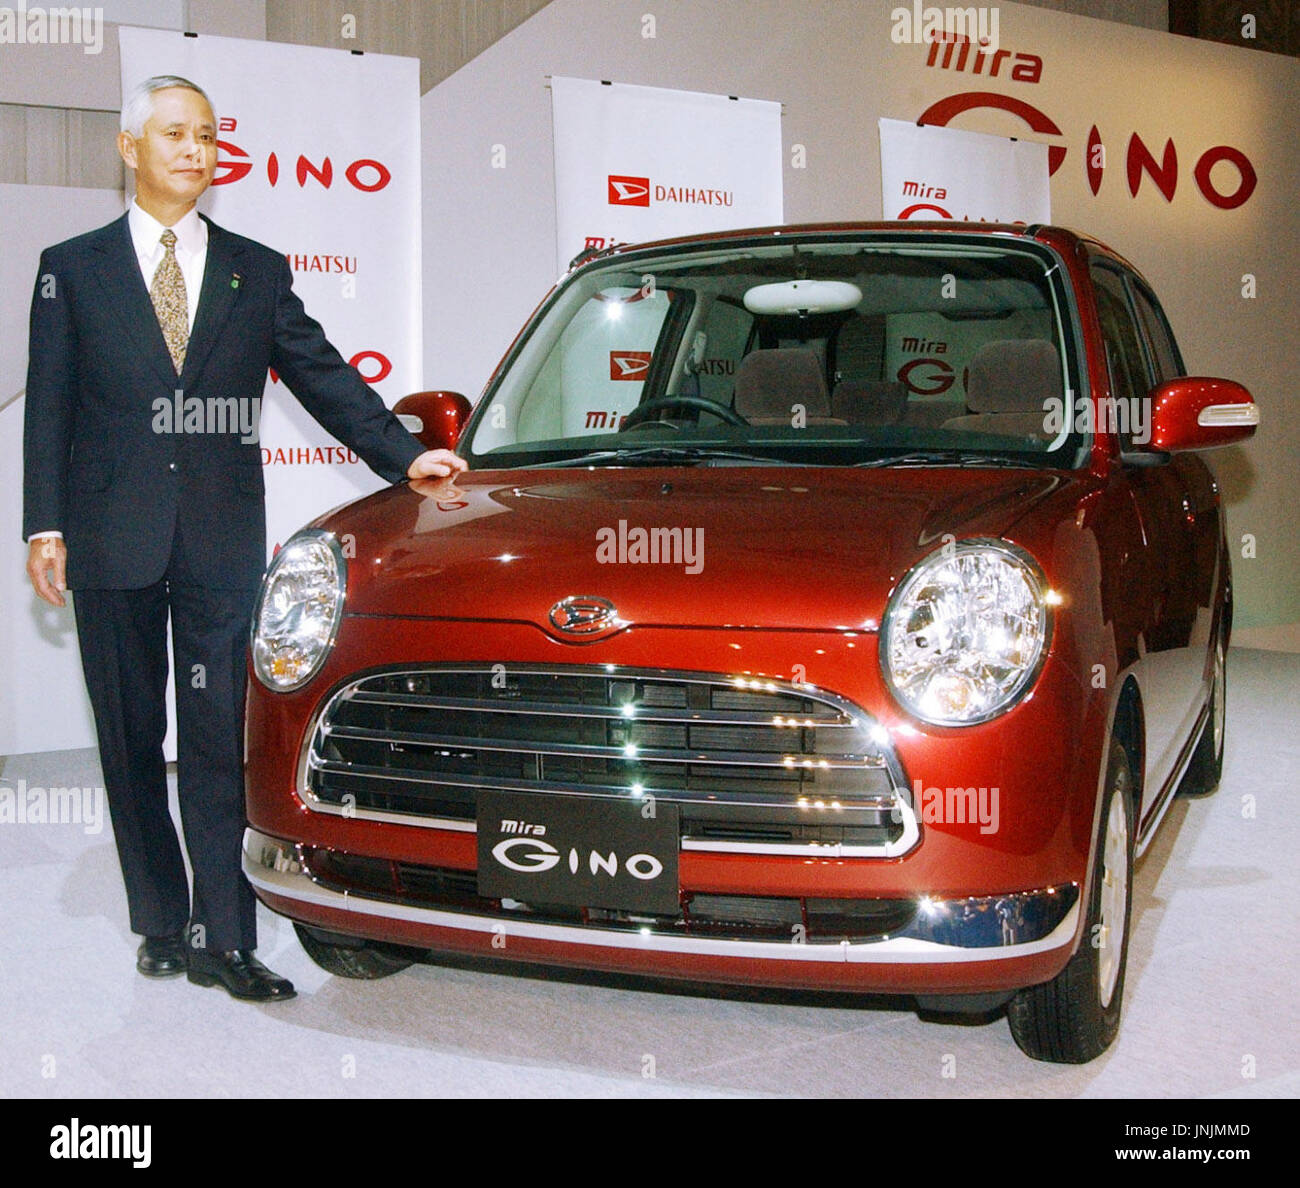 TOKYO, Japan - Daihatsu Motor Co. Präsident Takaya Yamada steht die Firma neue Mira Gino Minivan während einer Präsentation in einem Hotel in Tokio am 29. November. (Kyodo) Stockfoto